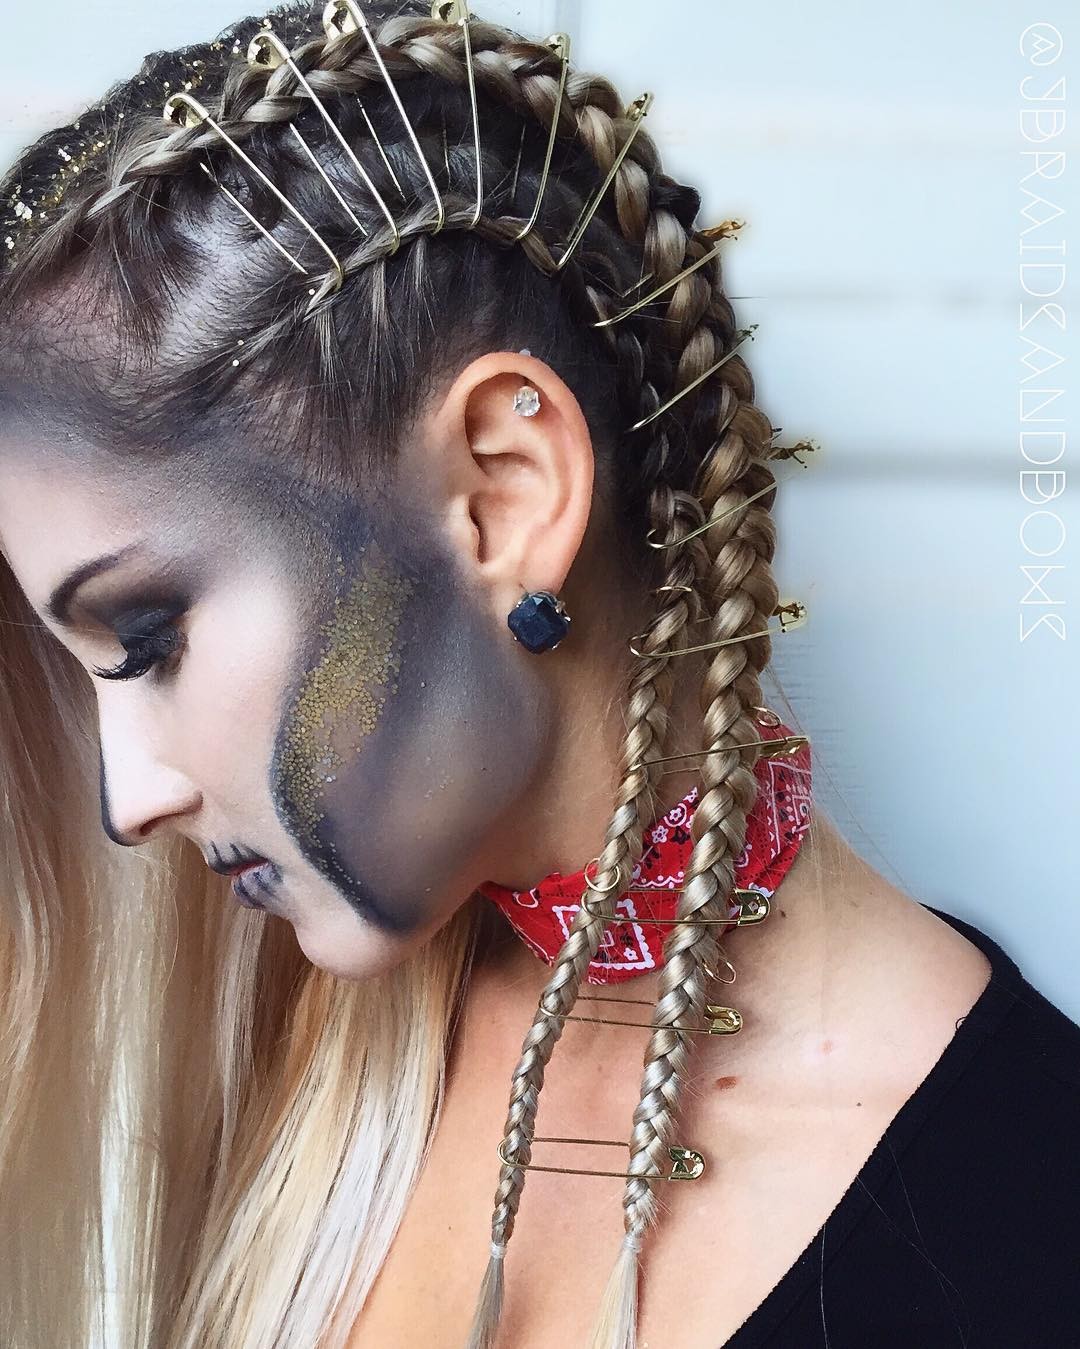 10 penteados de Halloween para você se inspirar - Revista Glamour | Cabelo